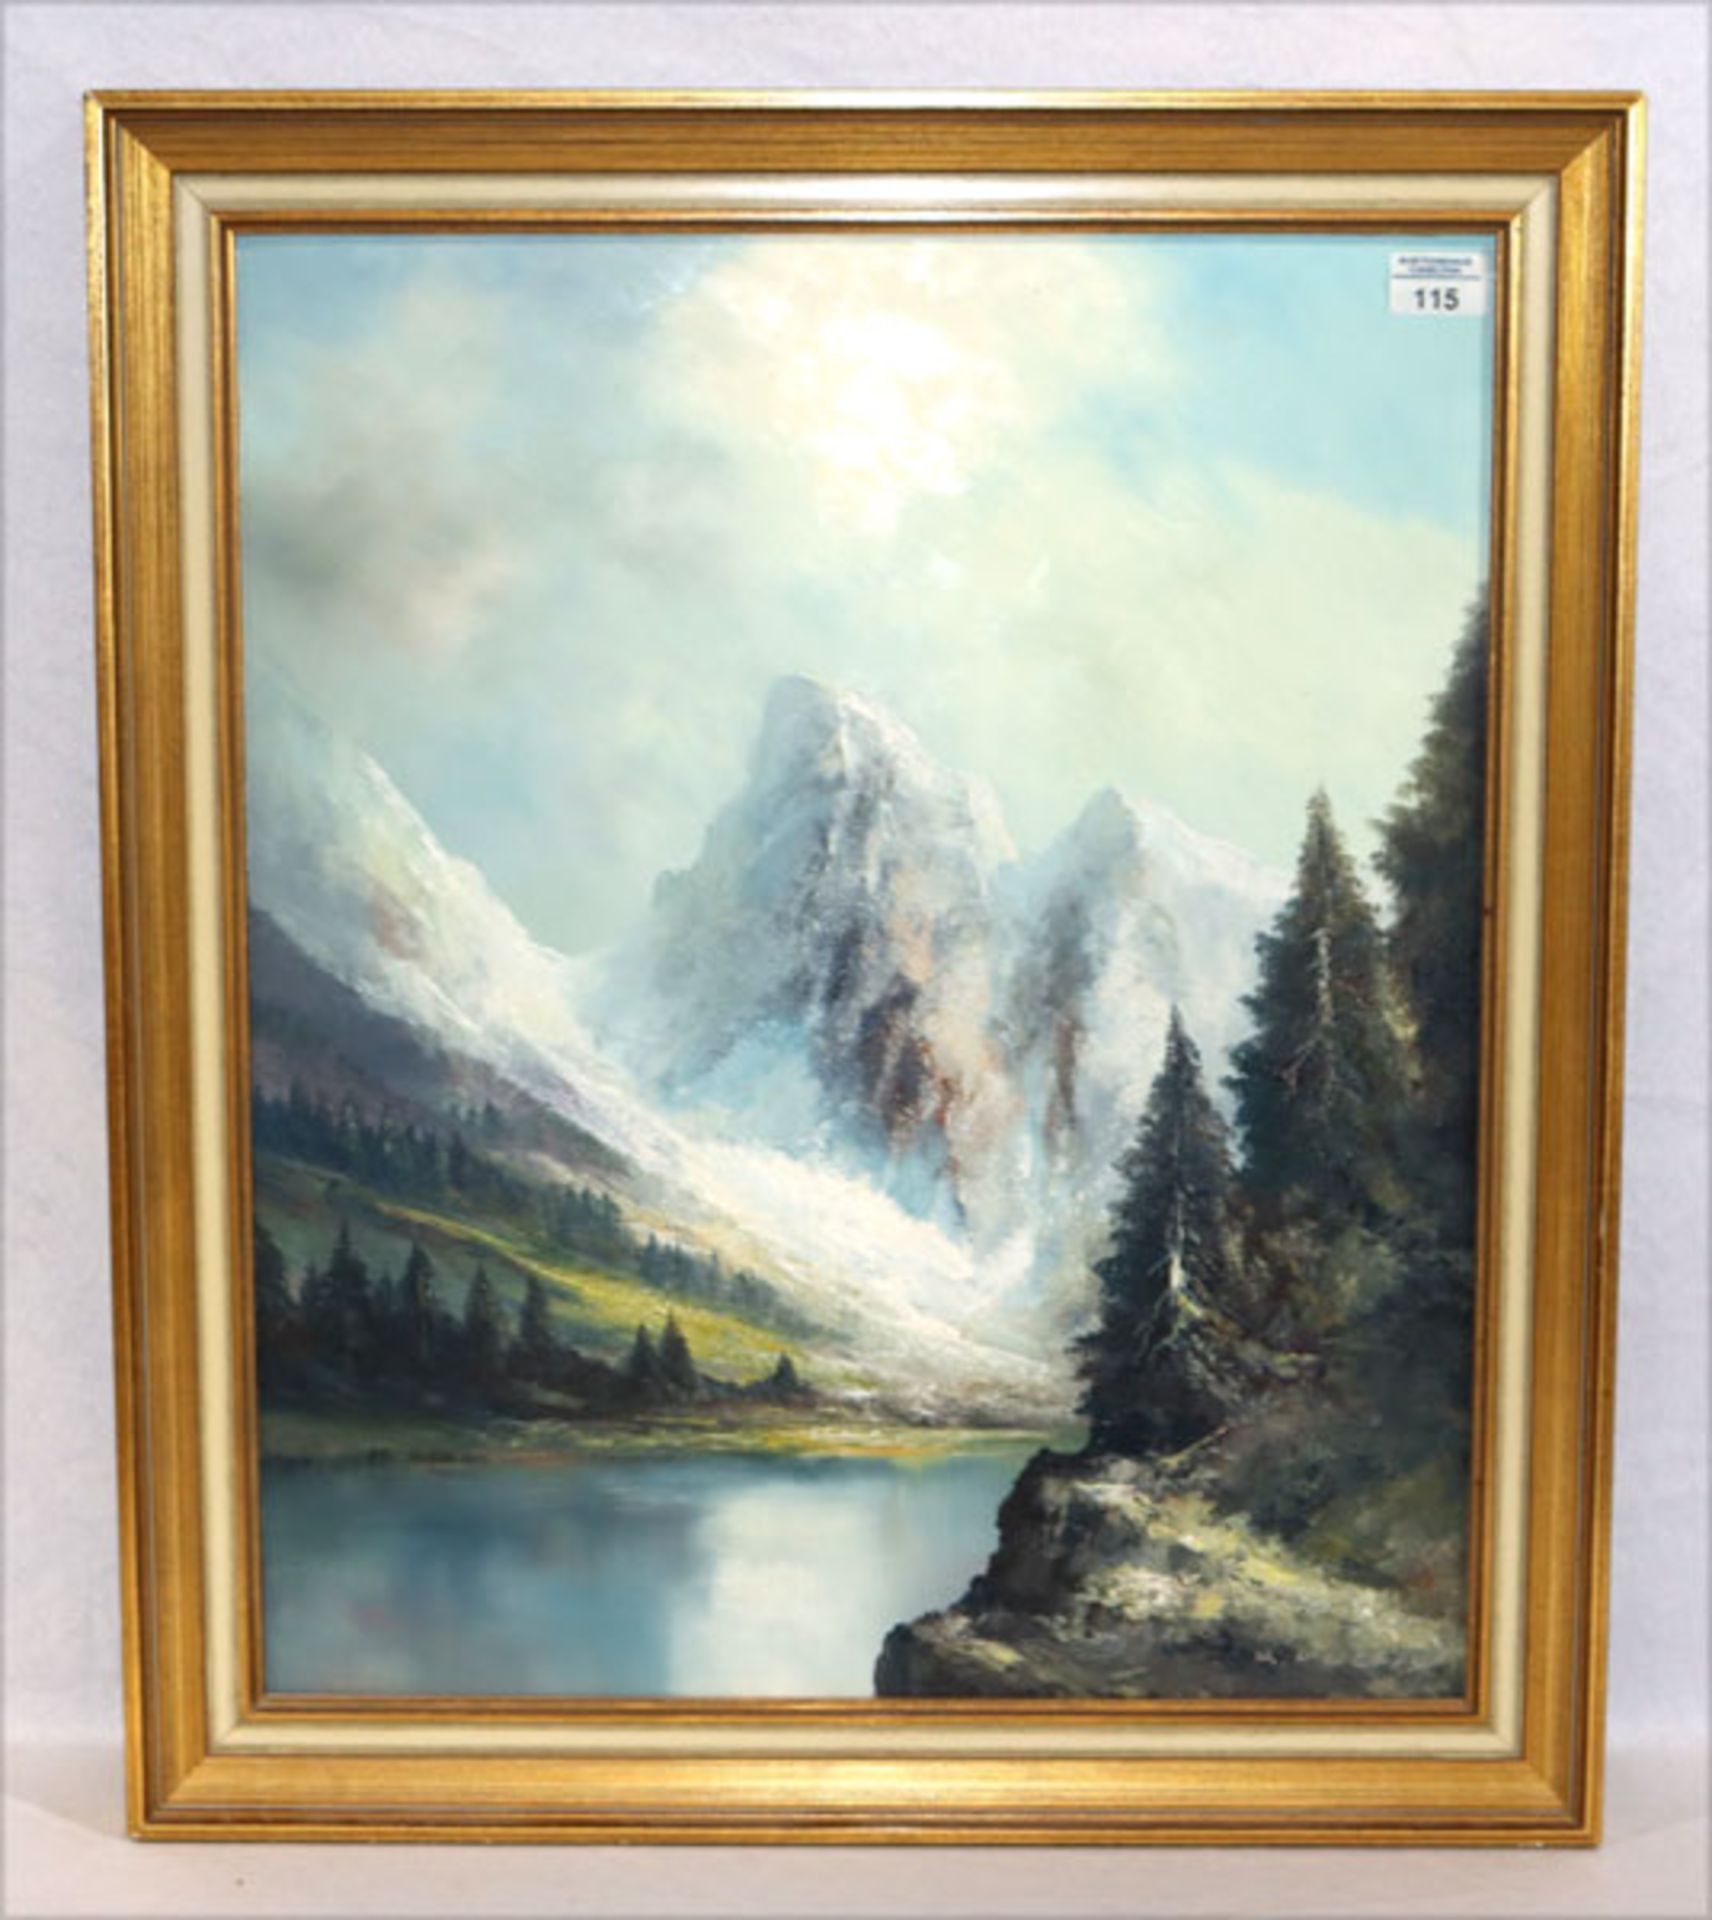 Gemälde ÖL/Hartfaser 'Hochgebirgs-Szenerie mit See', signiert Keizers, der Maler lebte um 1970